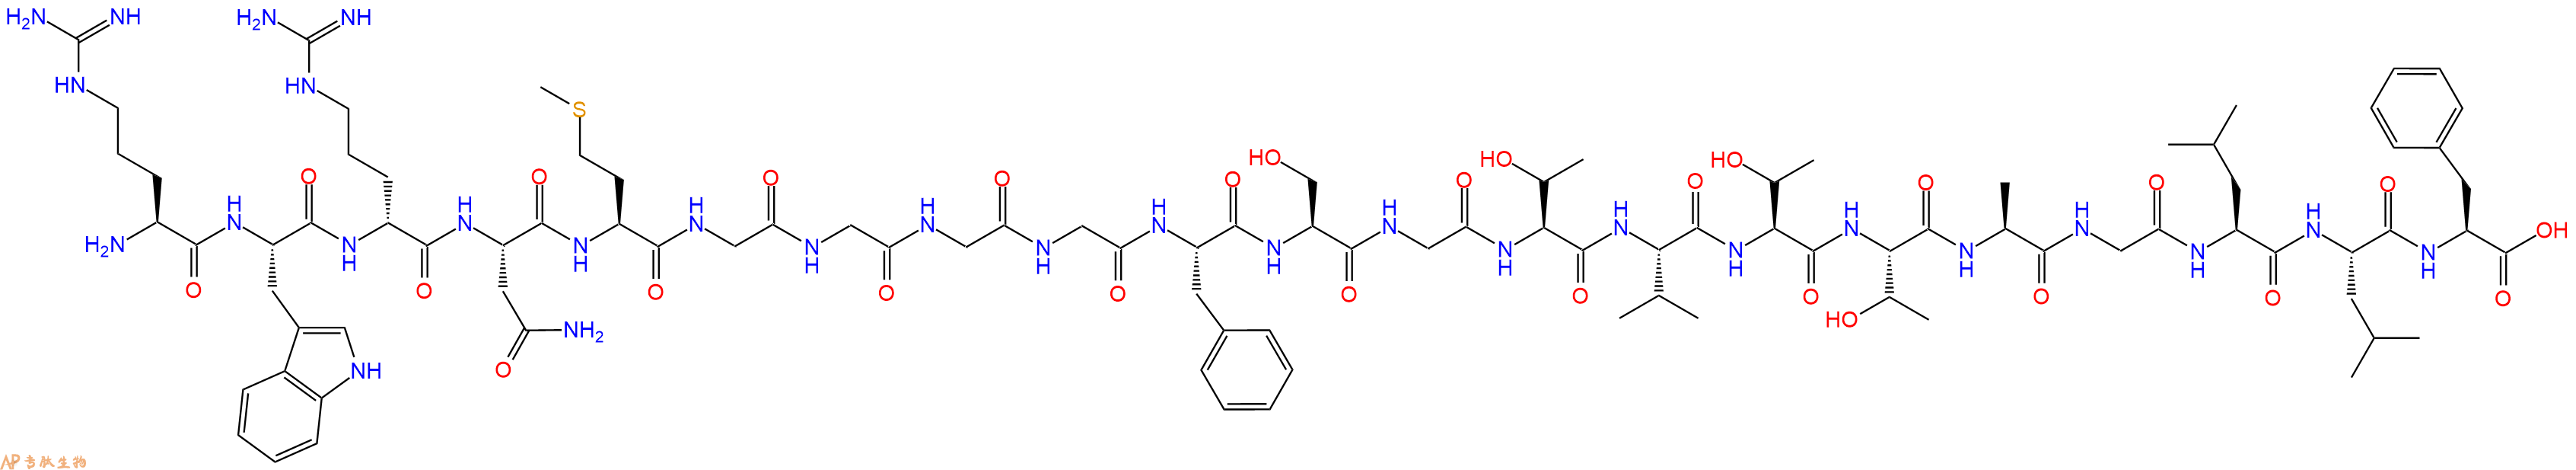 专肽生物产品H2N-Arg-Trp-DArg-Asn-Met-Gly-Gly-Gly-Gly-Phe-Ser-G